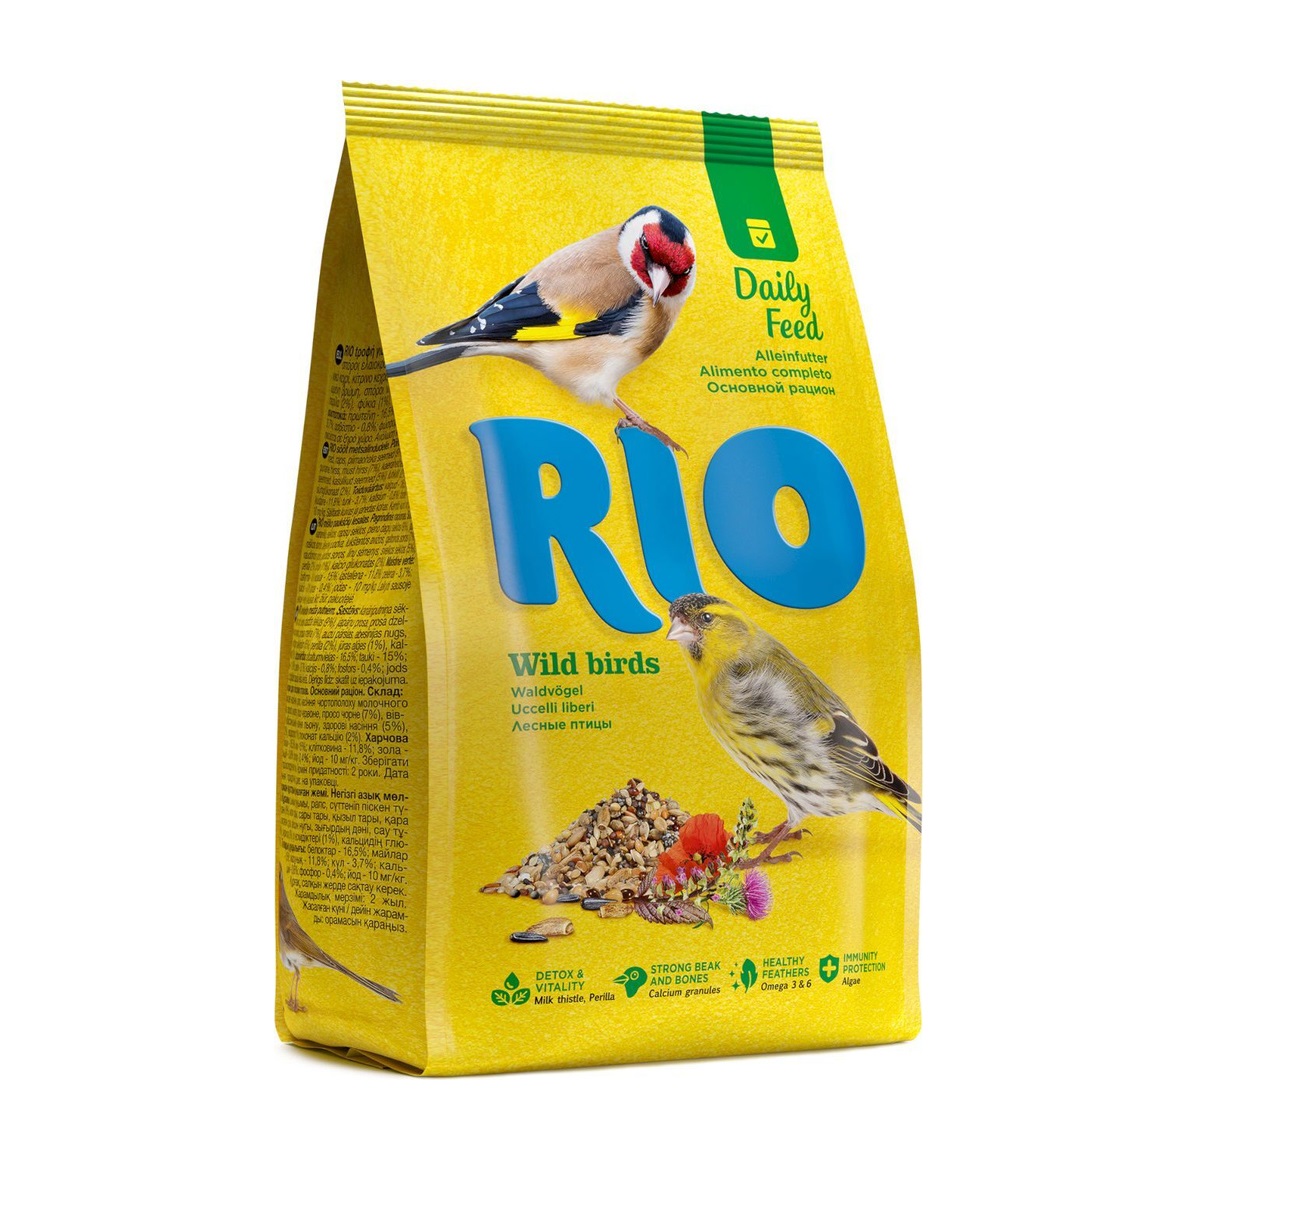 САМОВЫВОЗ !!! Рио 500гр - для лесных певчих птиц (Rio)